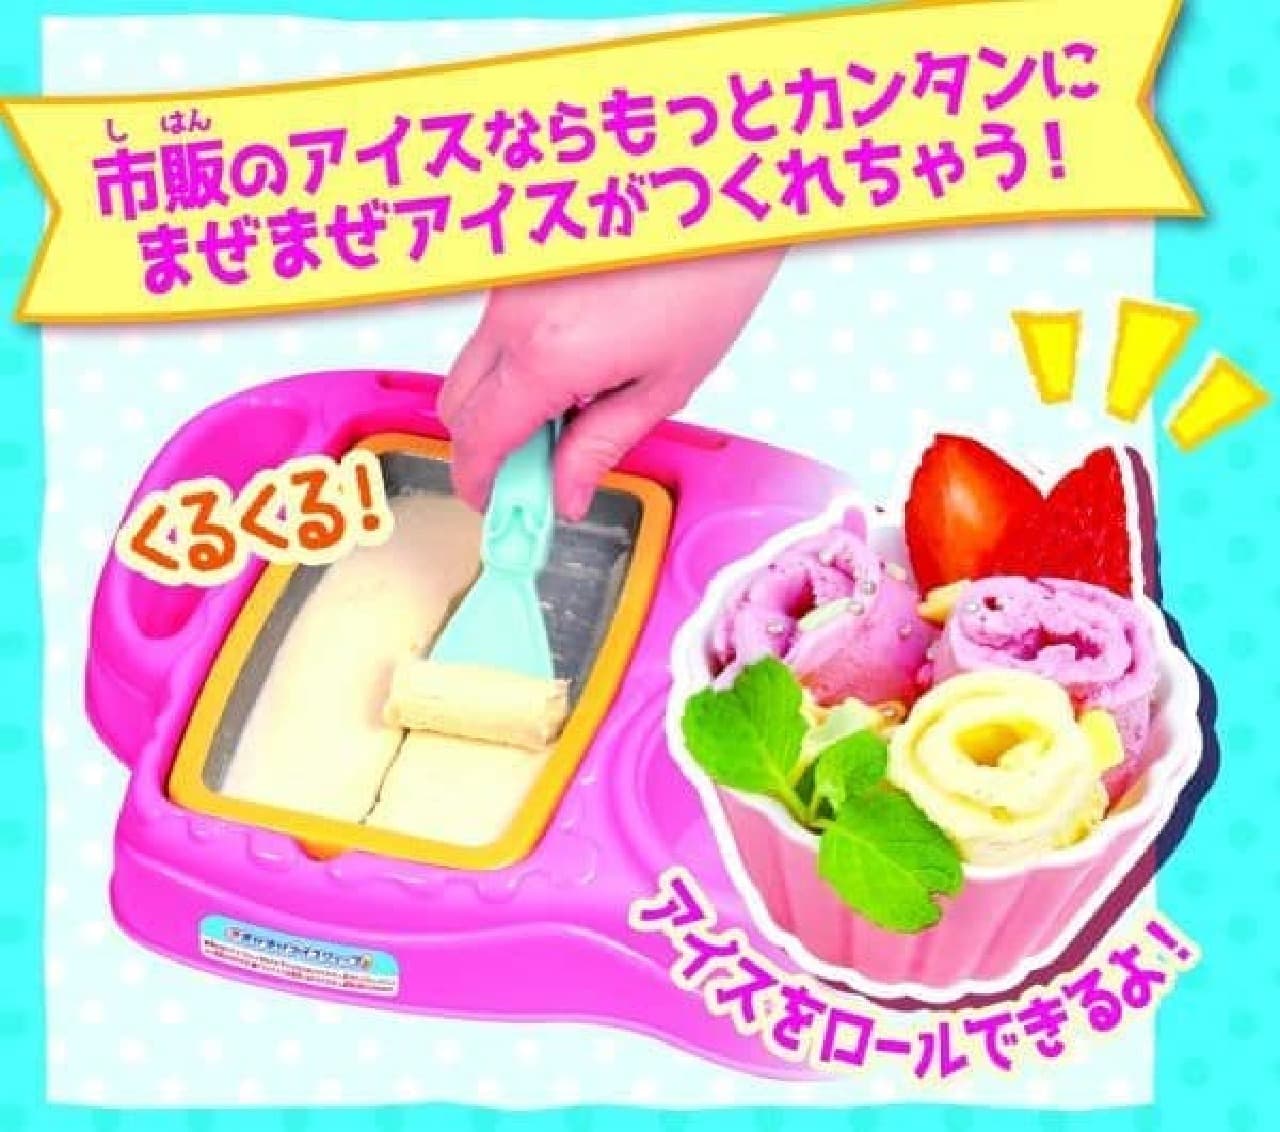 「まぜまぜアイスショップ」は、アイストレイに食材を入れて混ぜ合わせとオリジナルアイスが作れる玩具